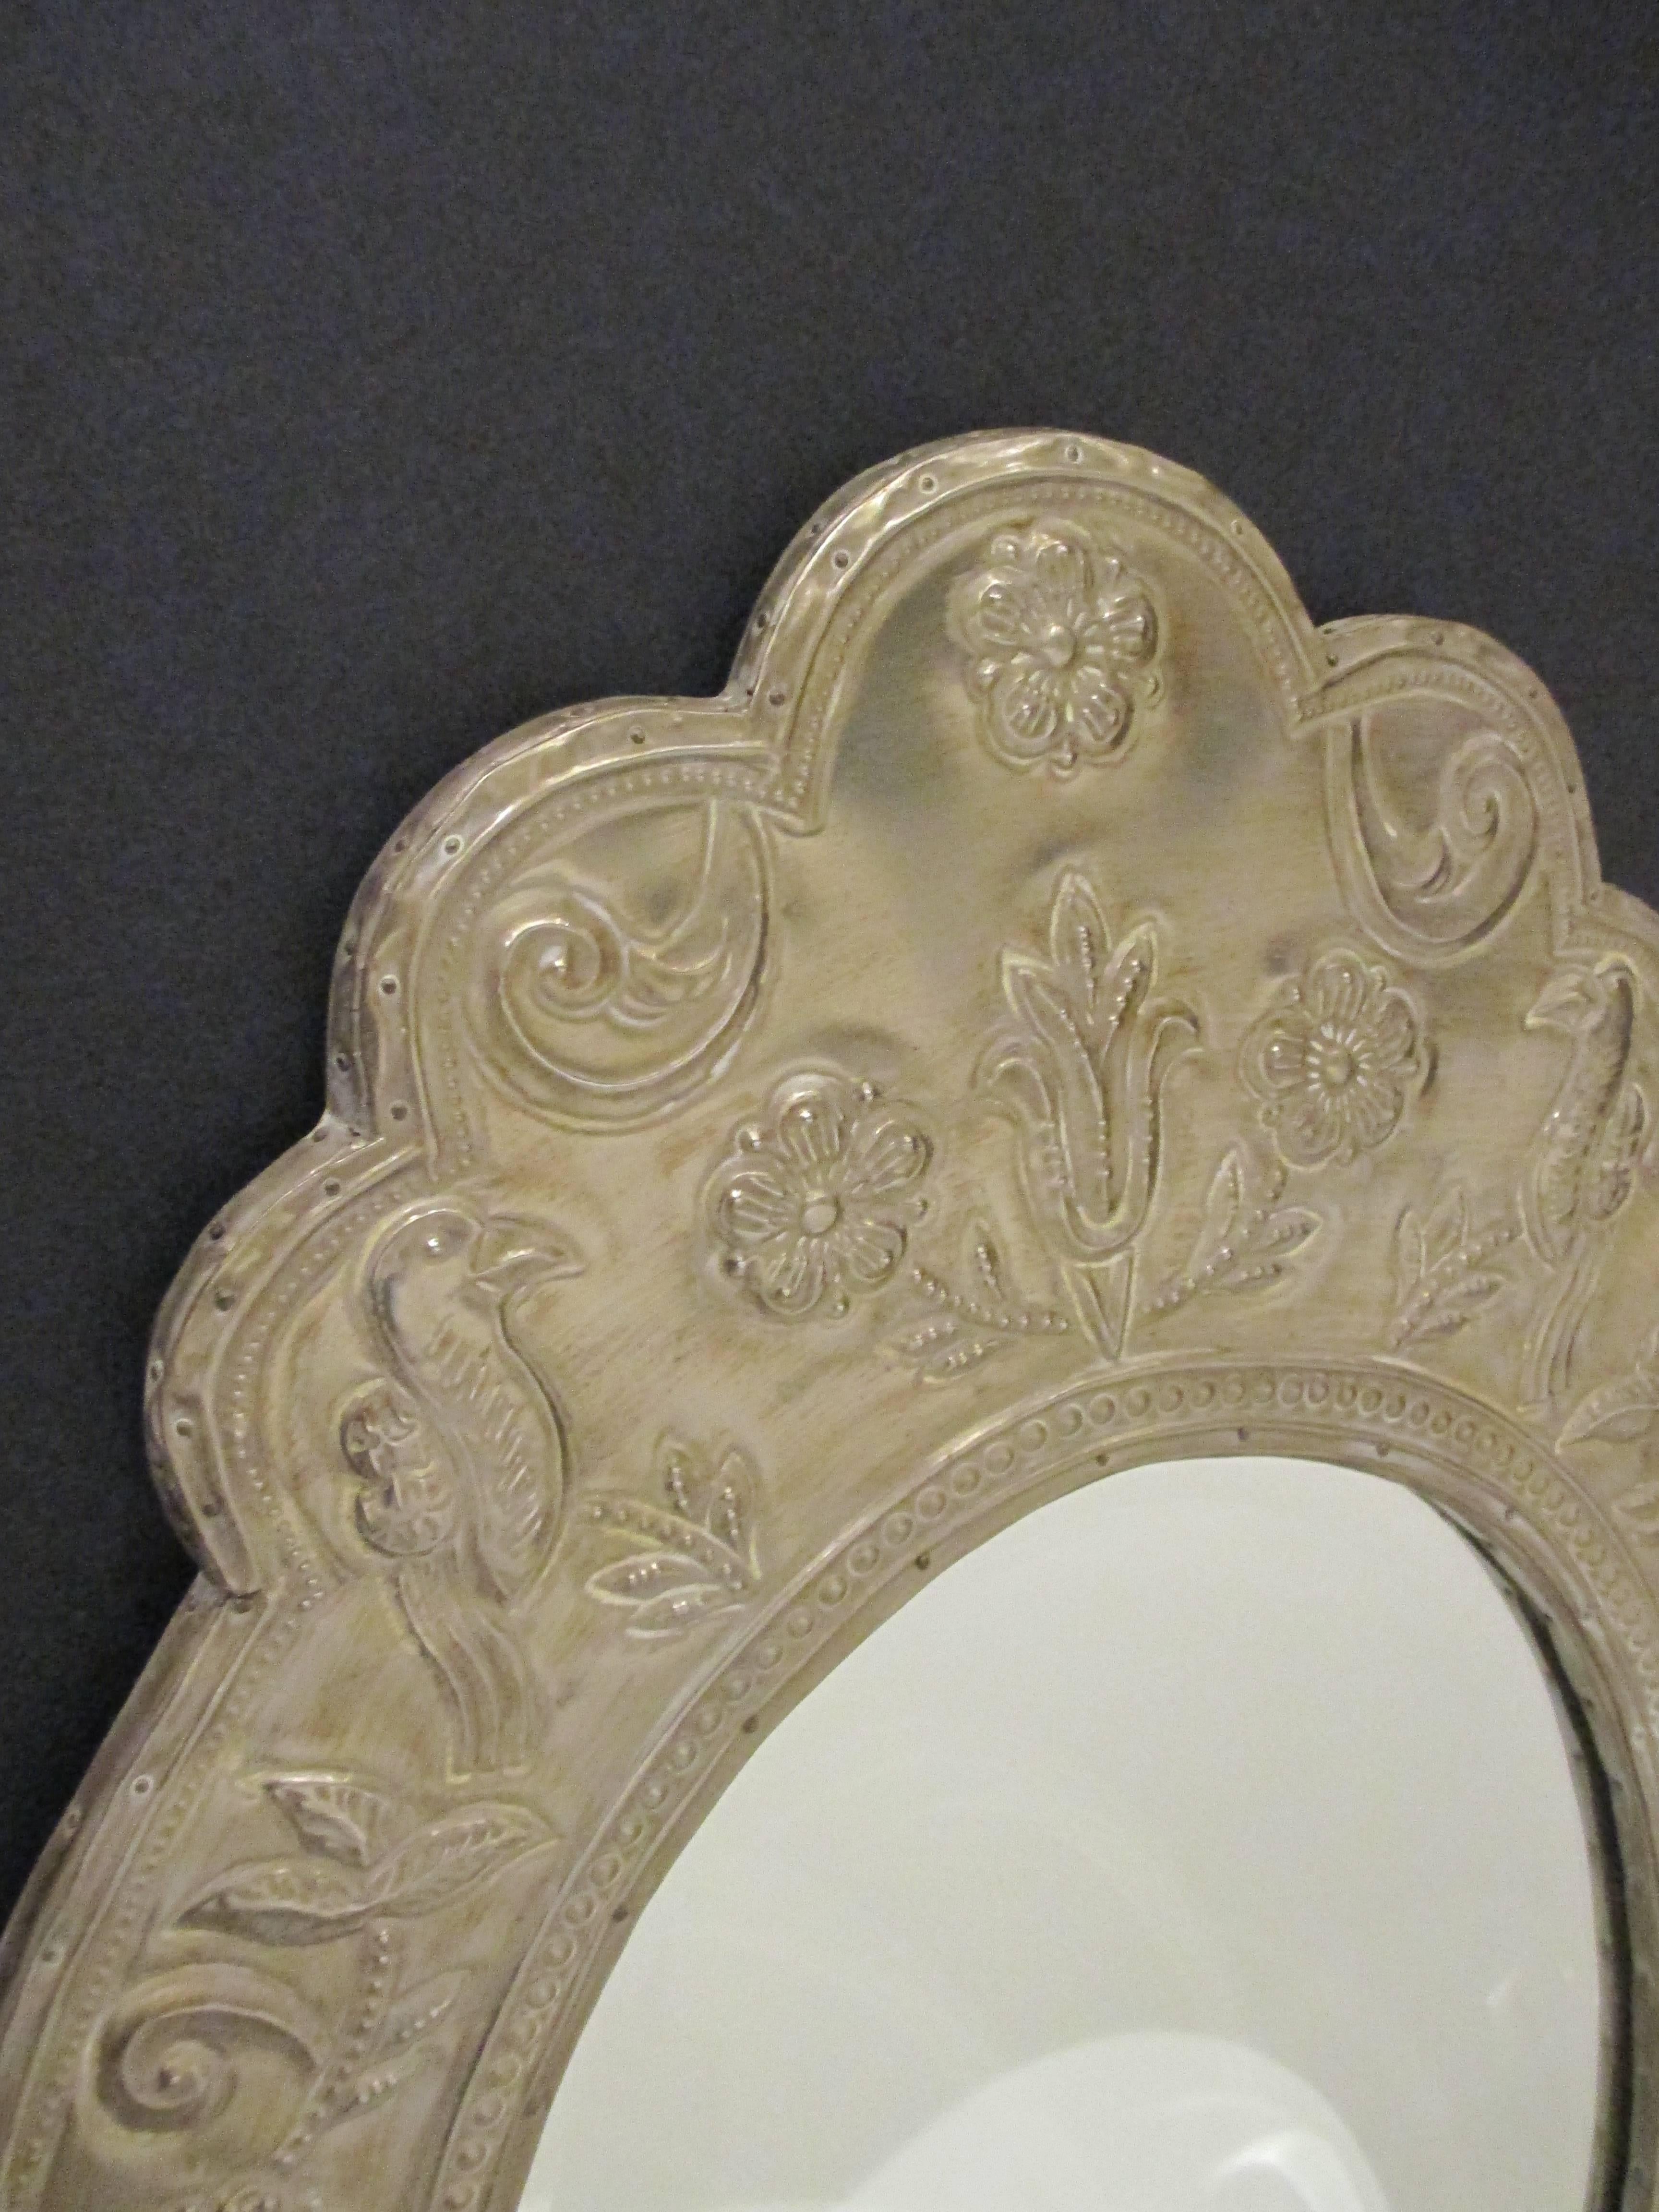 Ovaler metallverkleideter Spiegel.
Zinn antikisiertes Finish.
Klares Spiegelpaneel in der Mitte mit Abschrägung.
Gesamtgröße: H 81cm (32